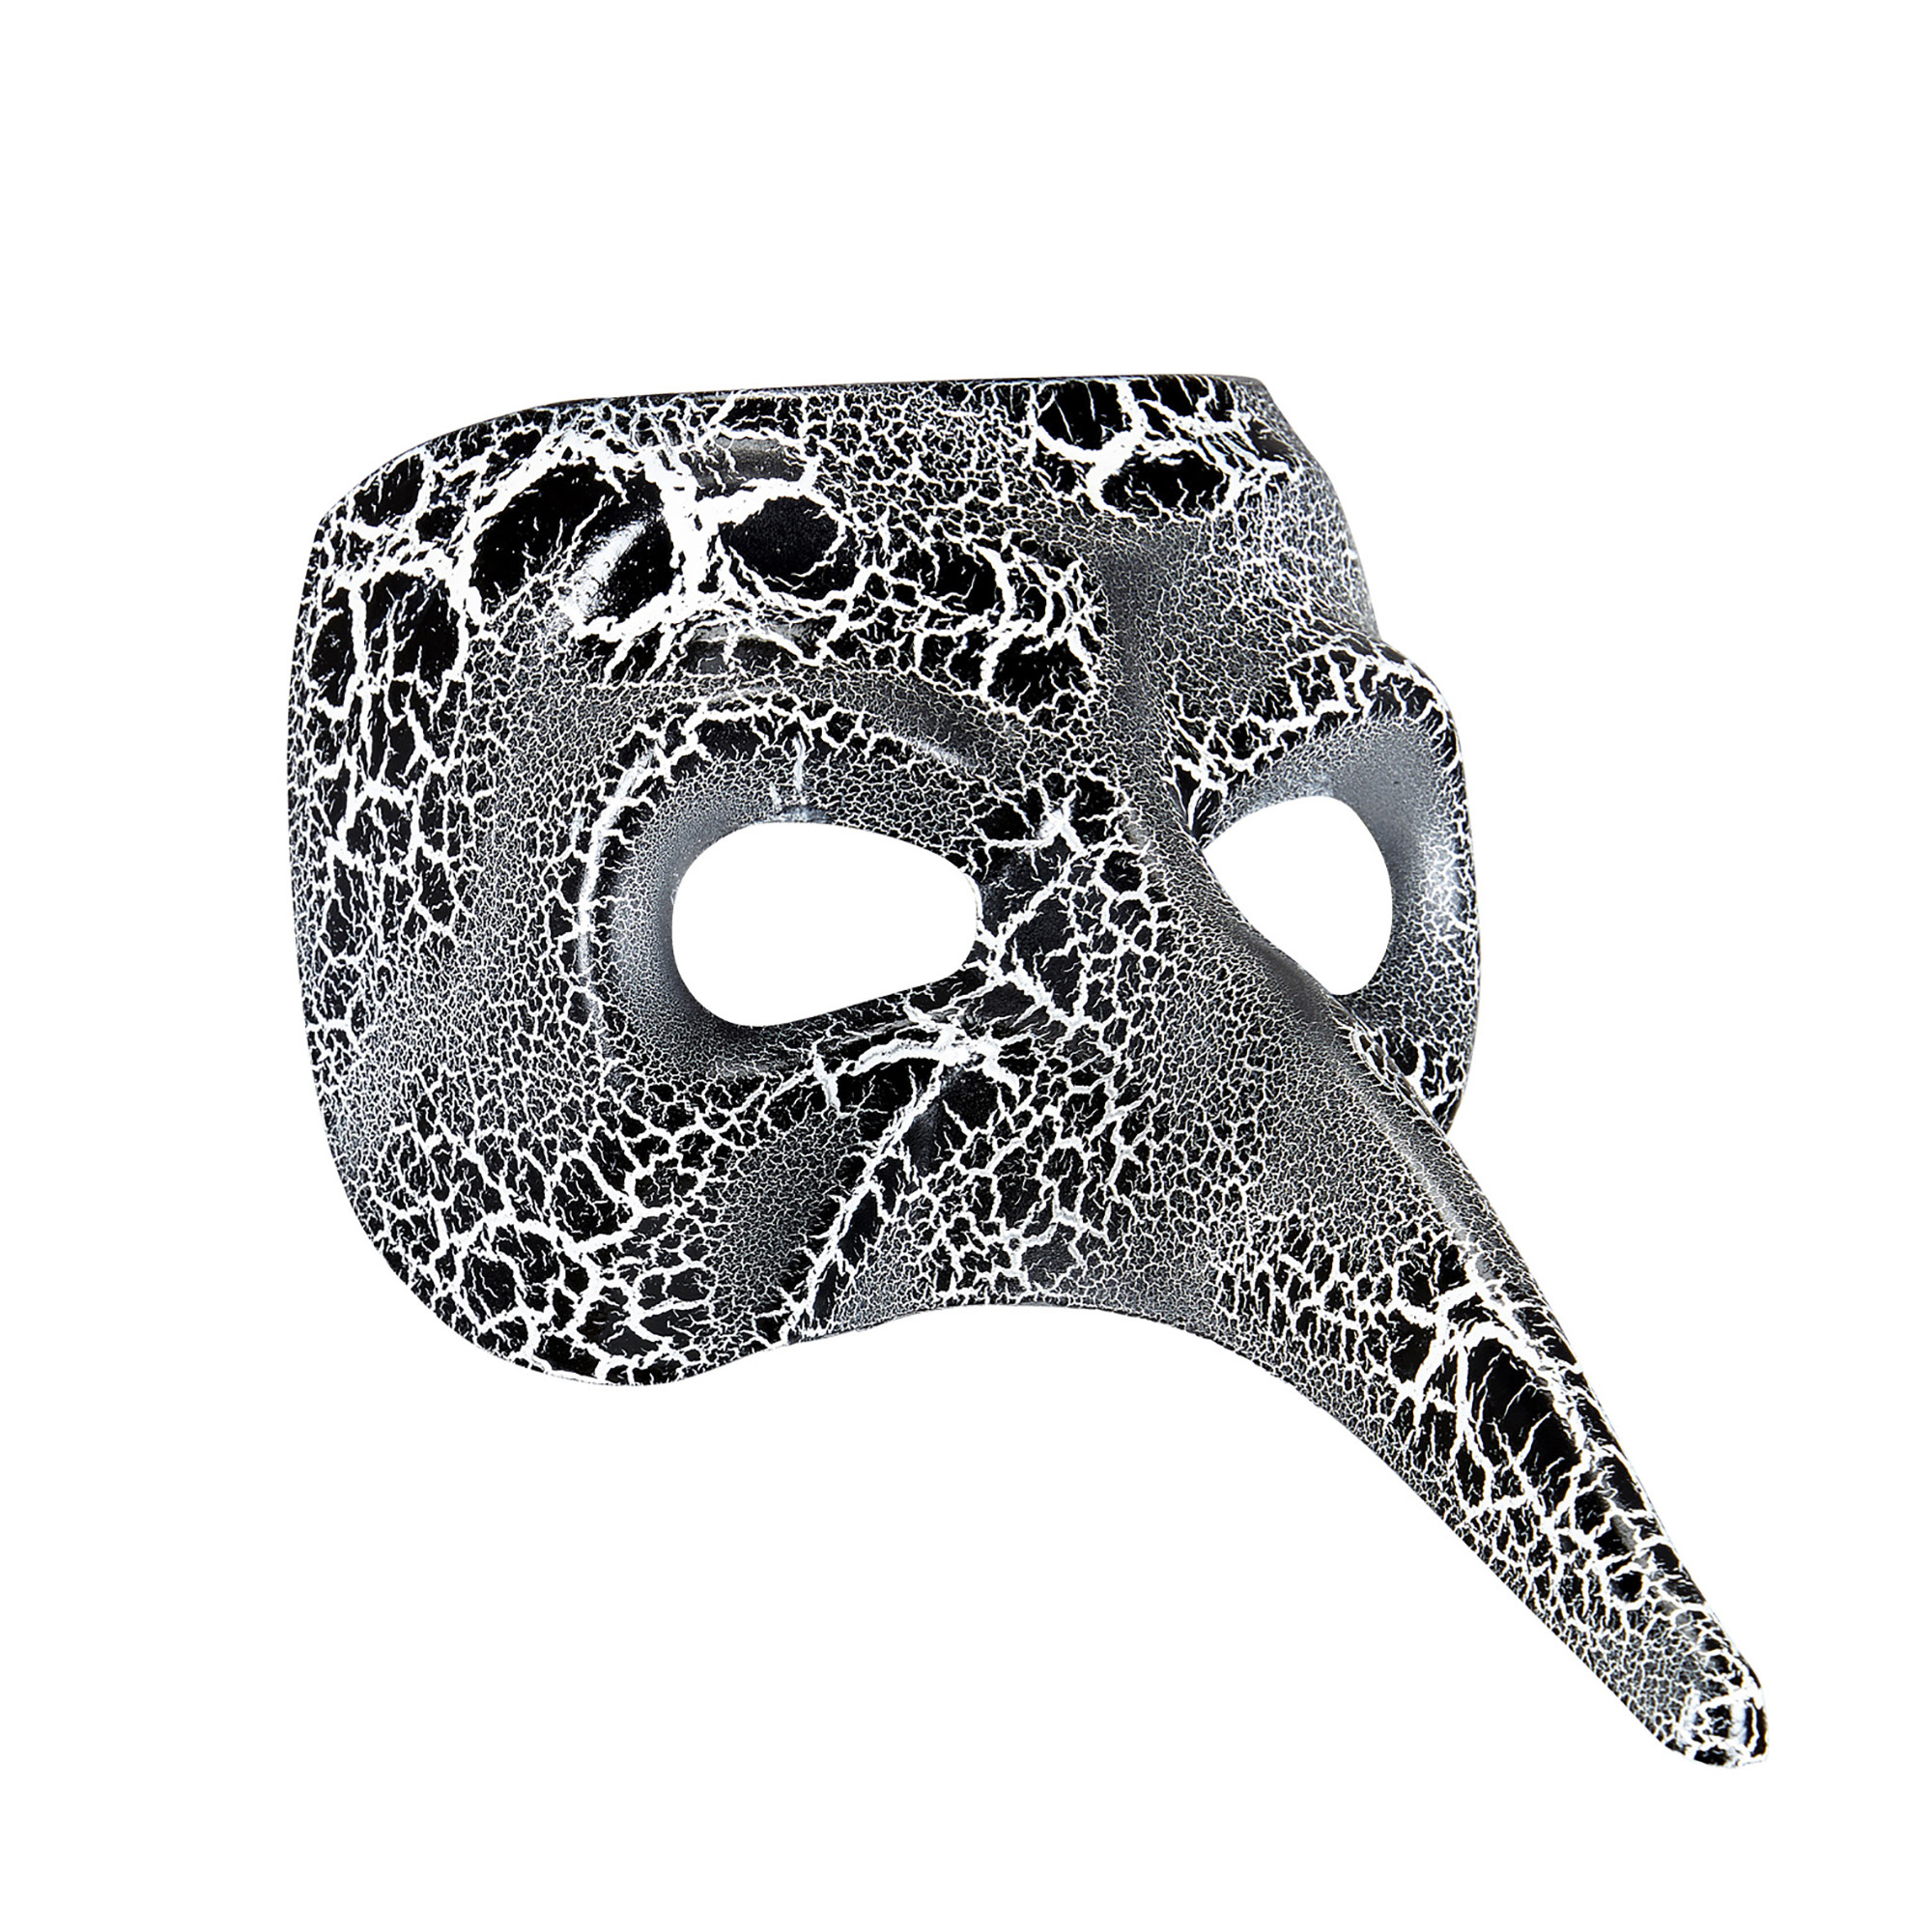 Venetiaans snavelmasker in zwart met witte nerven